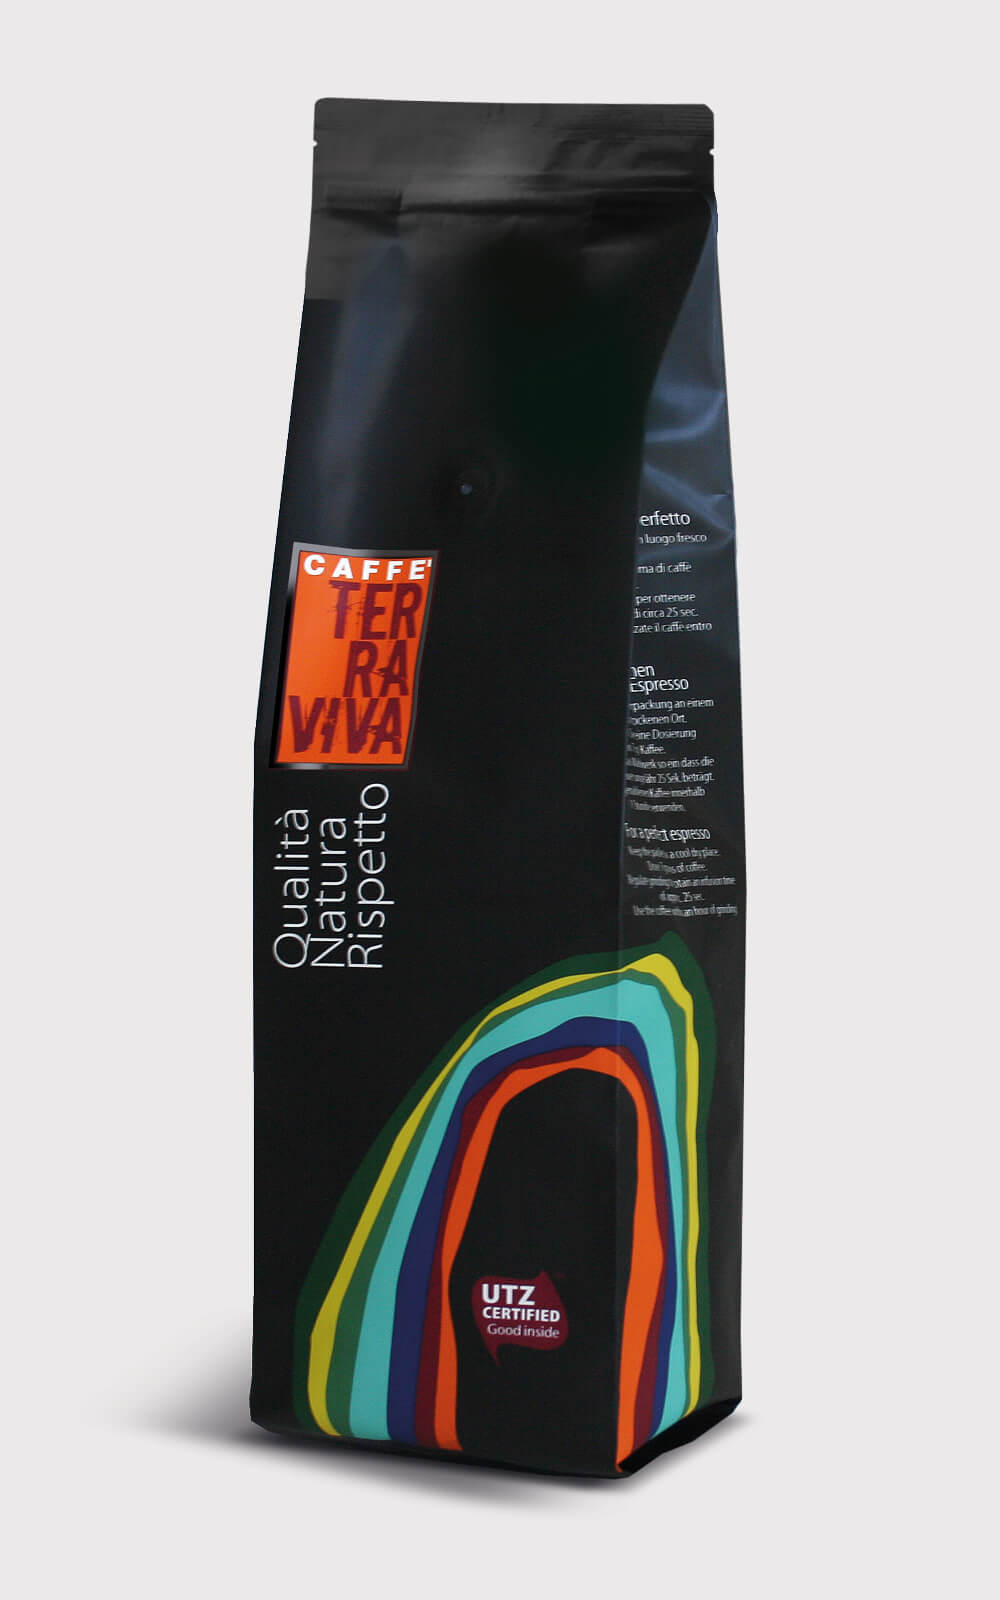 sacchetto caffè terraviva, progetto packaging creato da diade studio agenzia di comunicazione arco trento